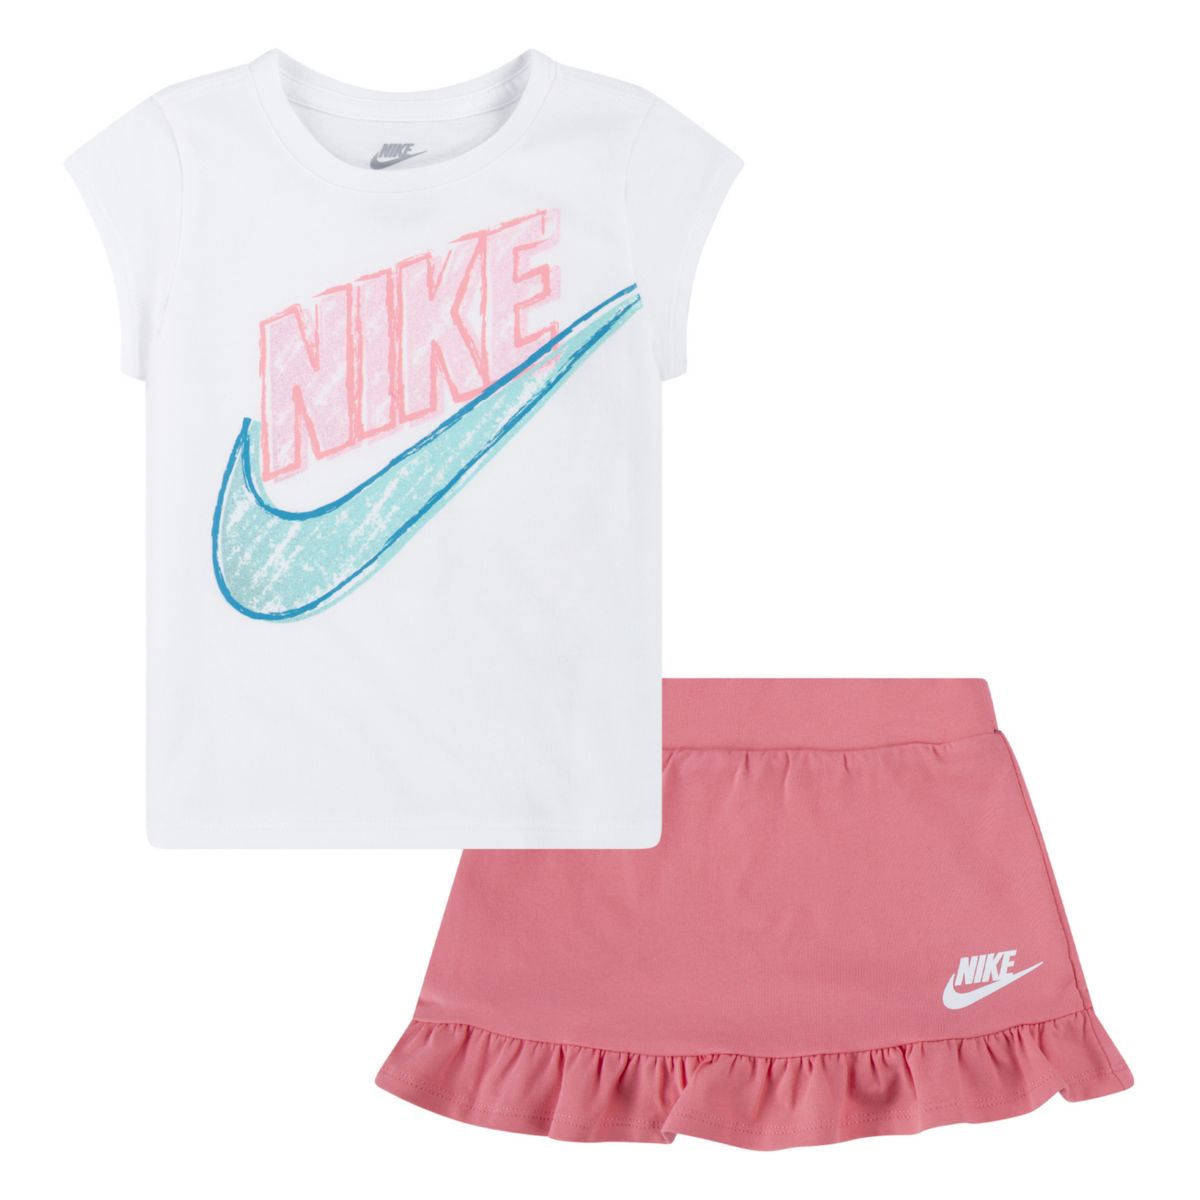 Детский комплект одежды для девочек Nike Futura: футболка и юбка-шорты Nike